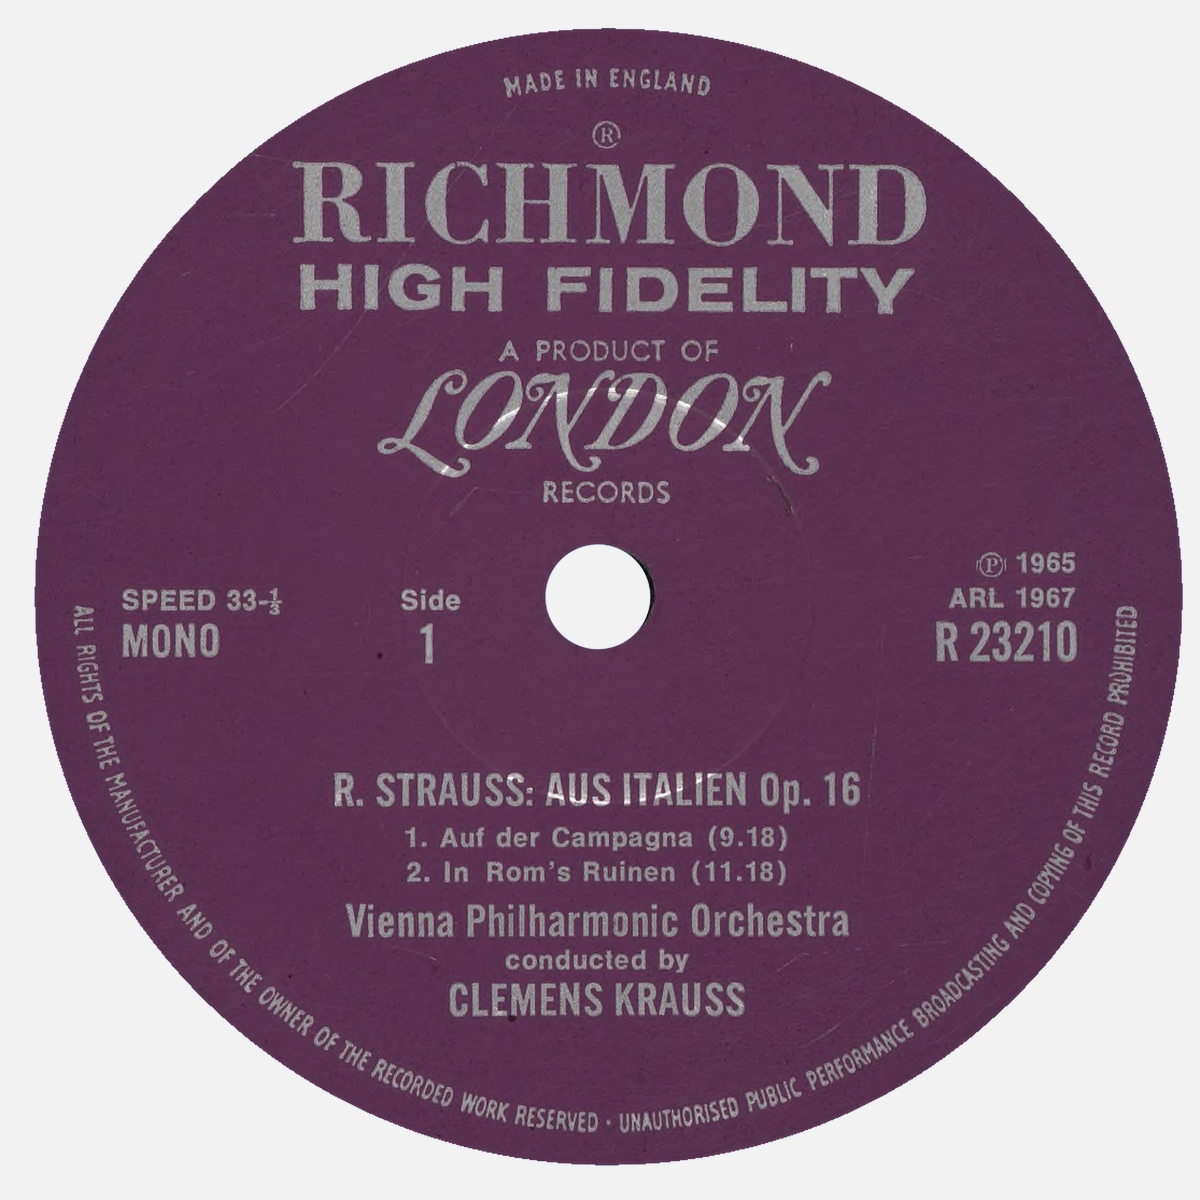 Étiquette recto du disque Decca LONDON R 23210